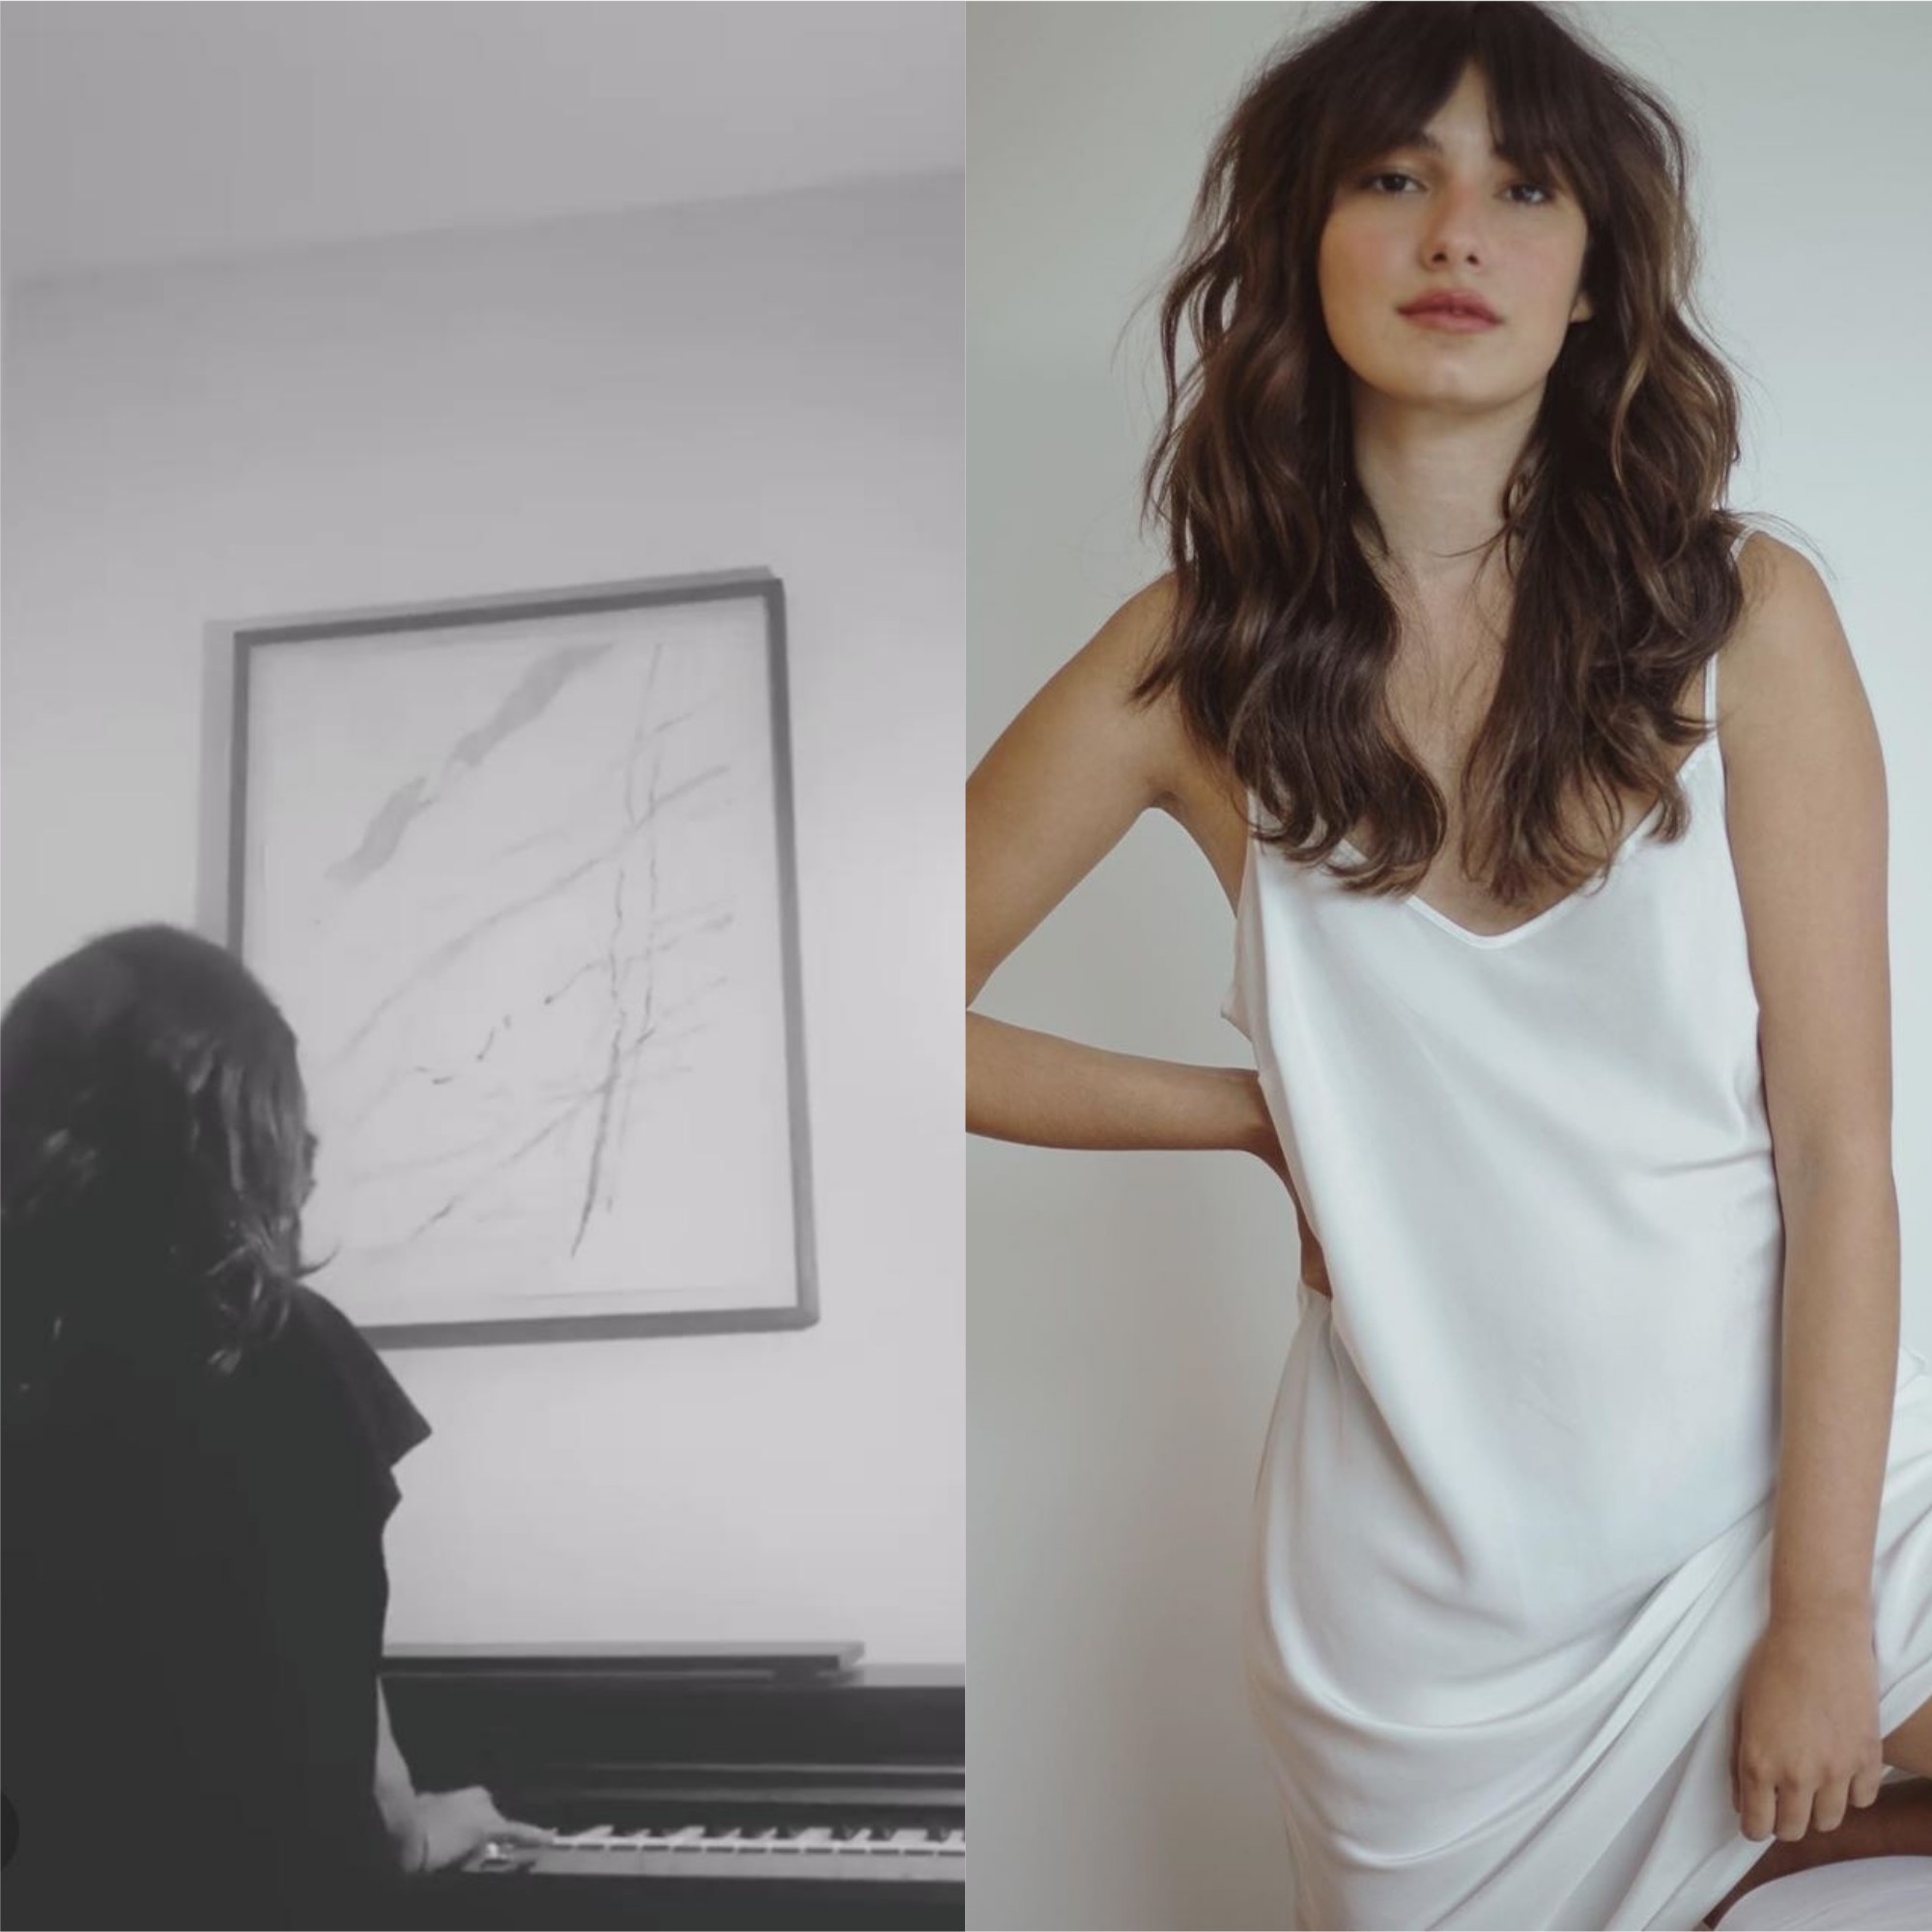 Marina Moschen toca piano em vídeo e impressiona seguidores (Foto: Reprodução/Instagram)